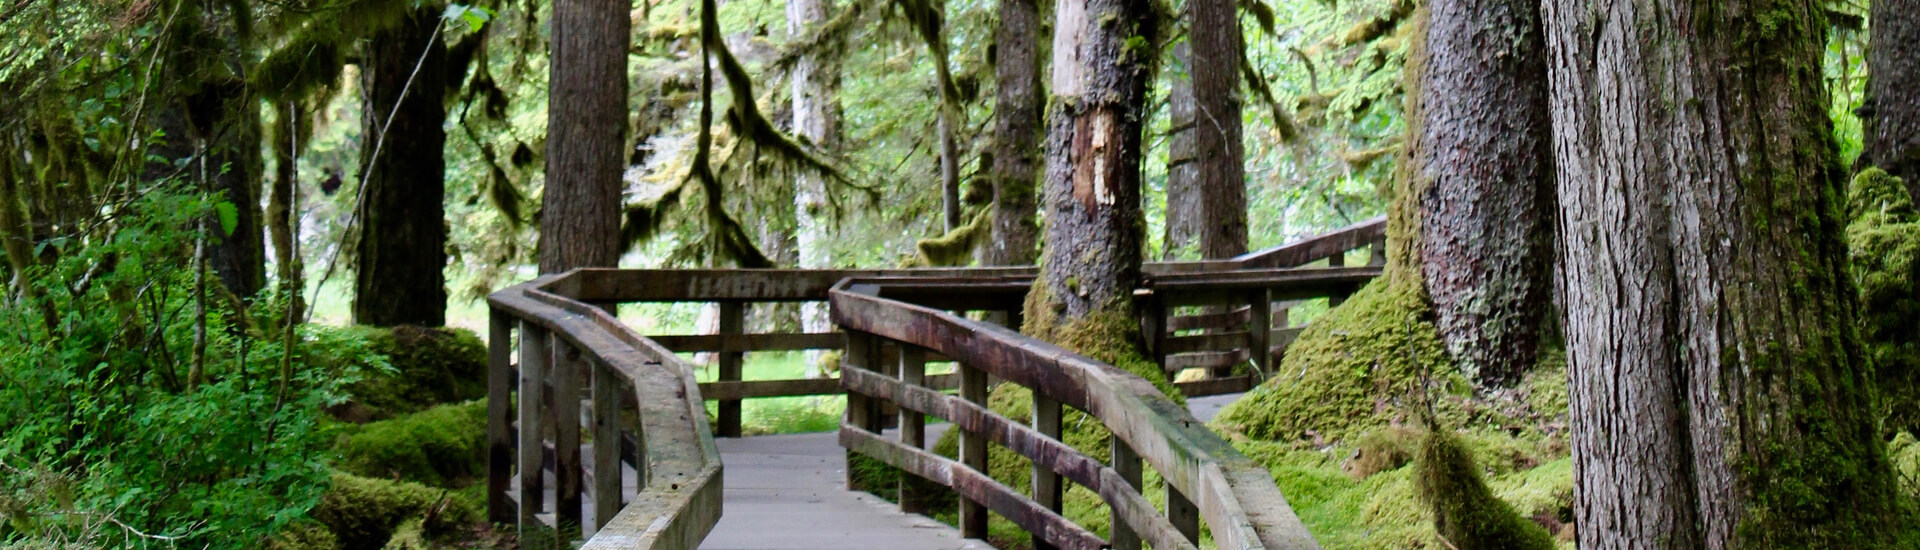 Boardwalk in Southeast Alaska Rainforest